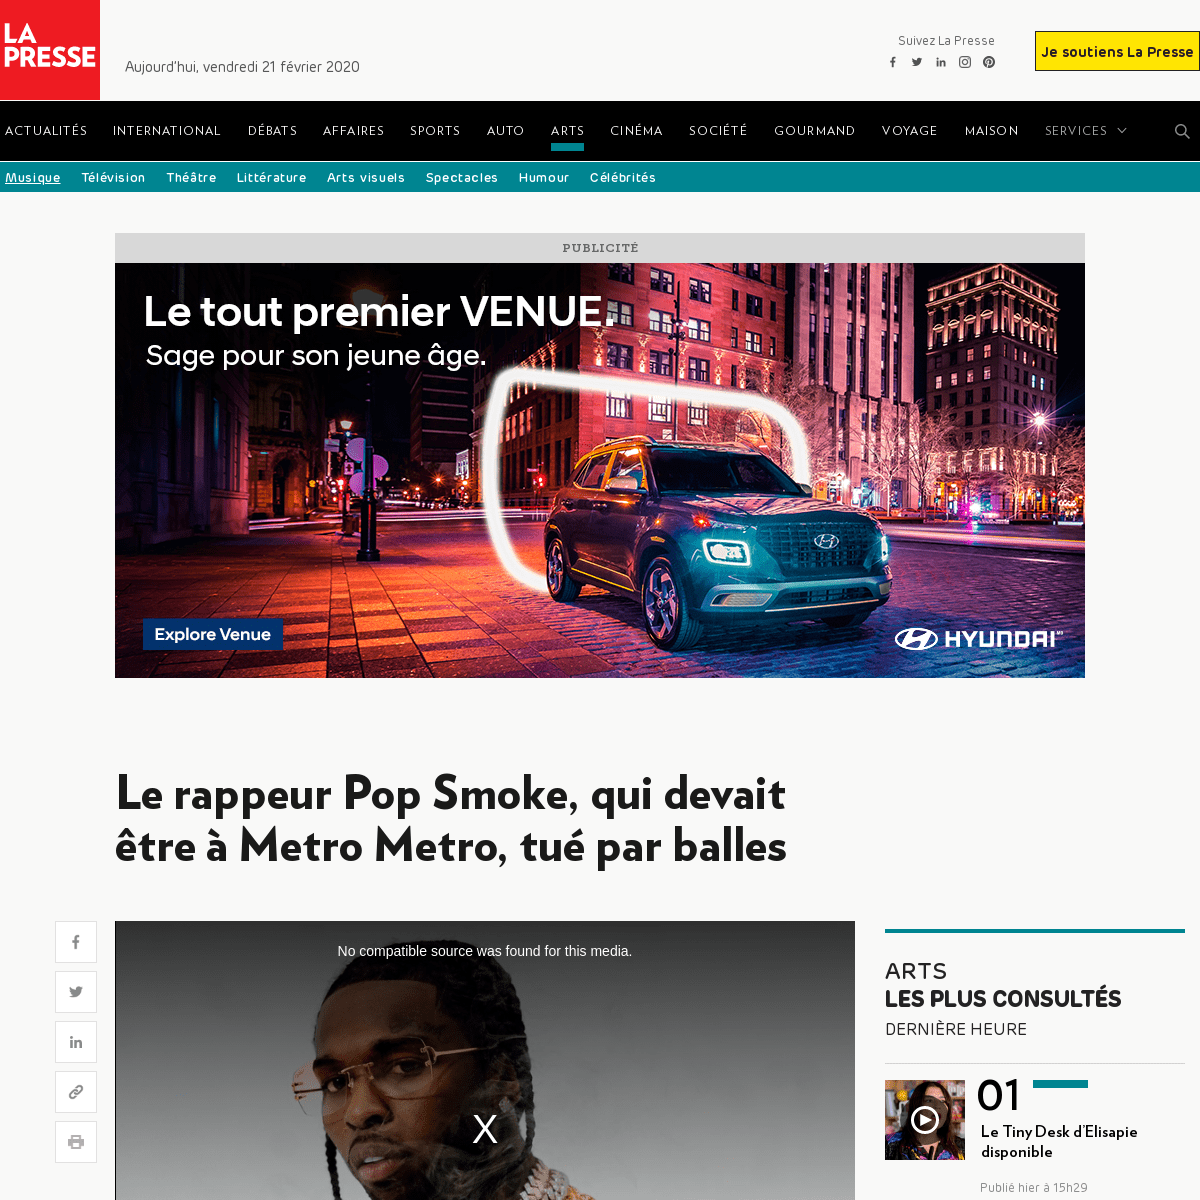 A complete backup of www.lapresse.ca/arts/musique/202002/19/01-5261553-le-rappeur-pop-smoke-qui-devait-etre-a-metro-metro-tue-pa